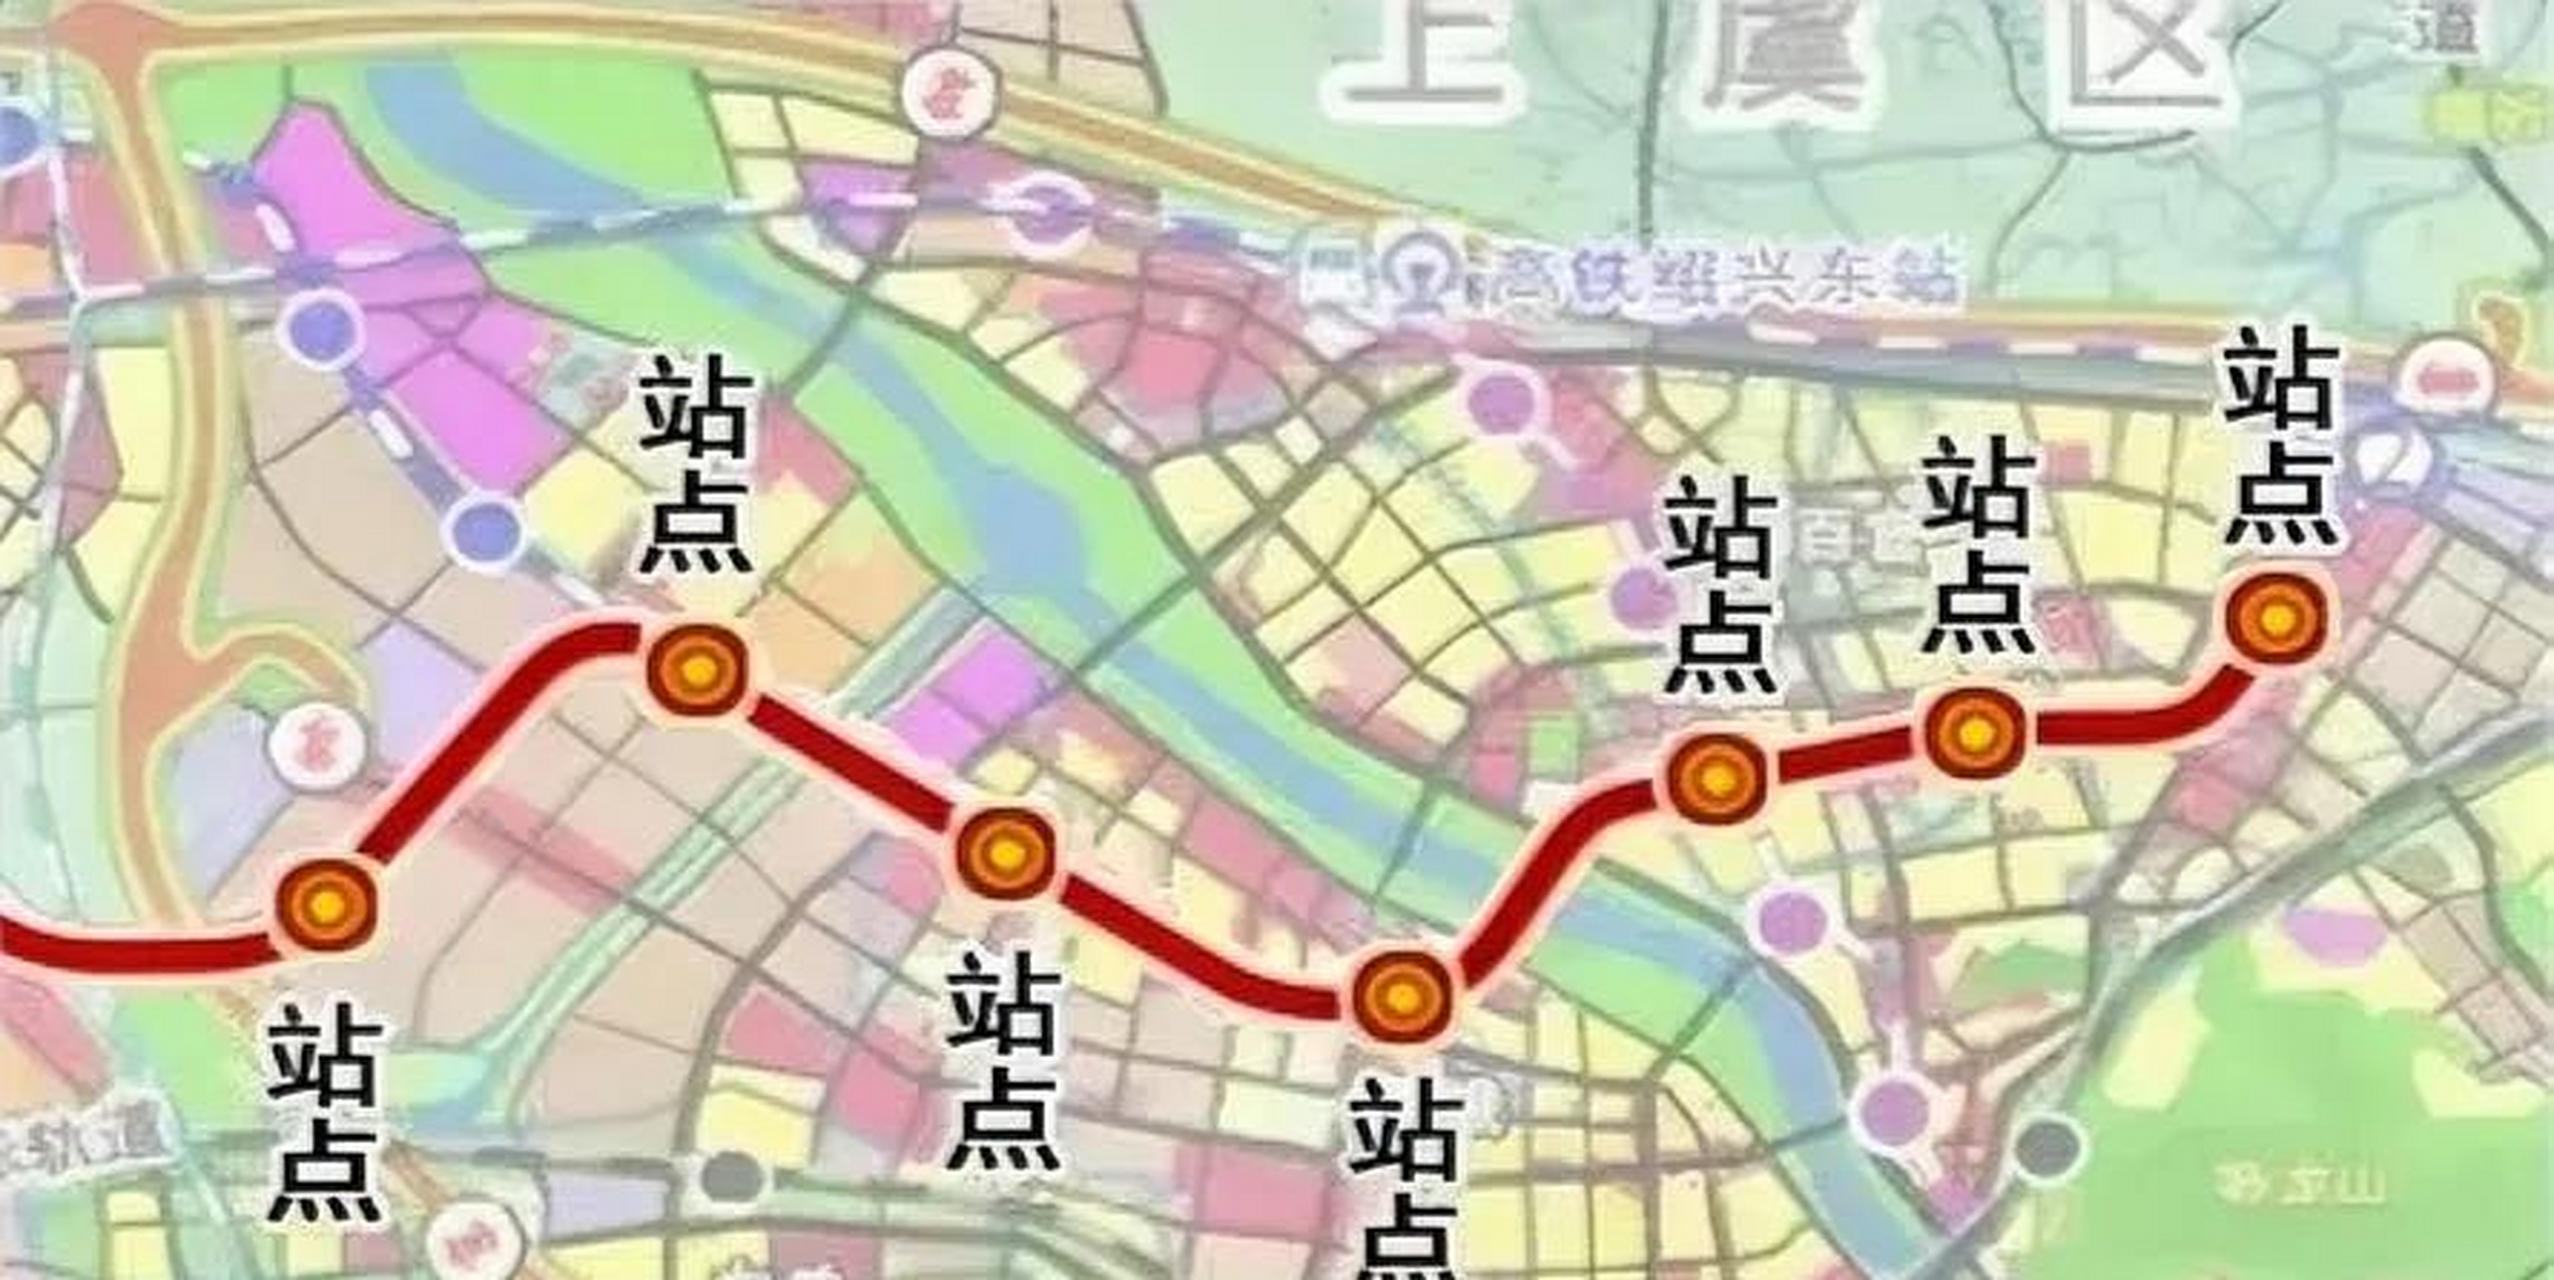 绍兴地铁2号线二期工程建成时间明确:将于今年9月开工建设,2028年12月